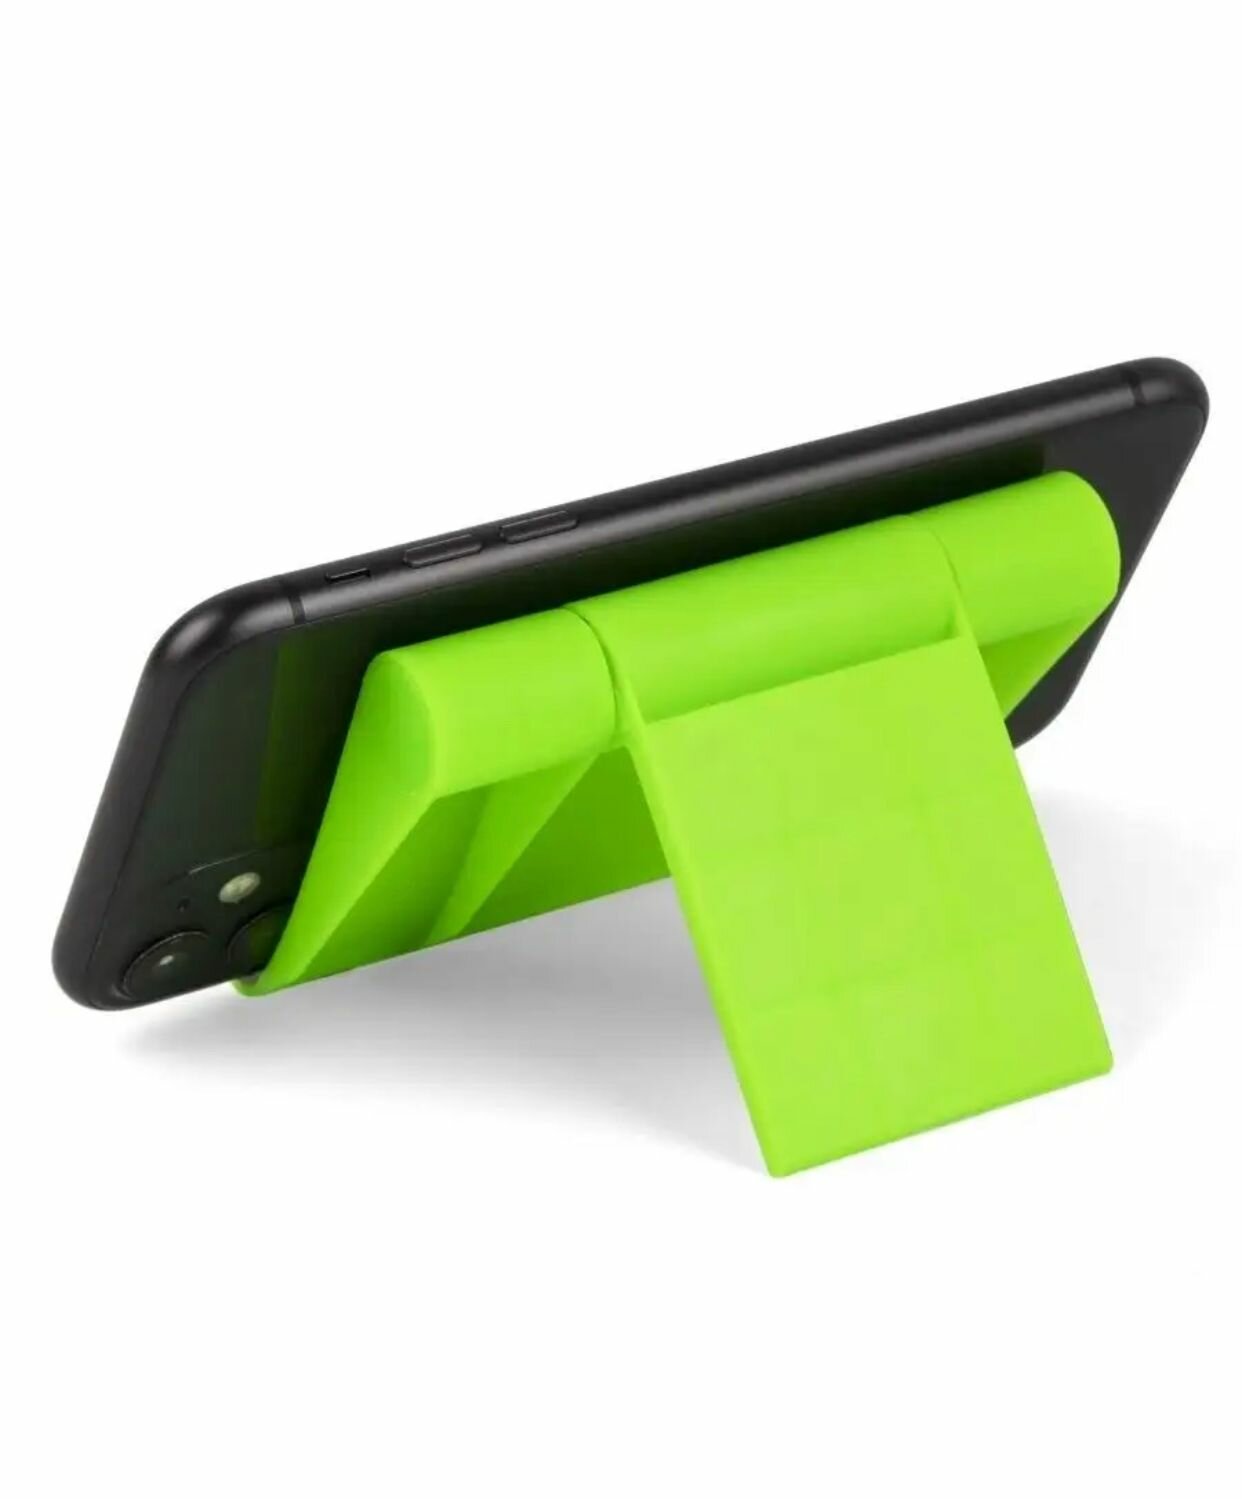 Подставка для телефона настольная зеленая / держатель для мобильника, планшета, стойка на стол для смартфона Android/iphone/Xiaomi/Samsung